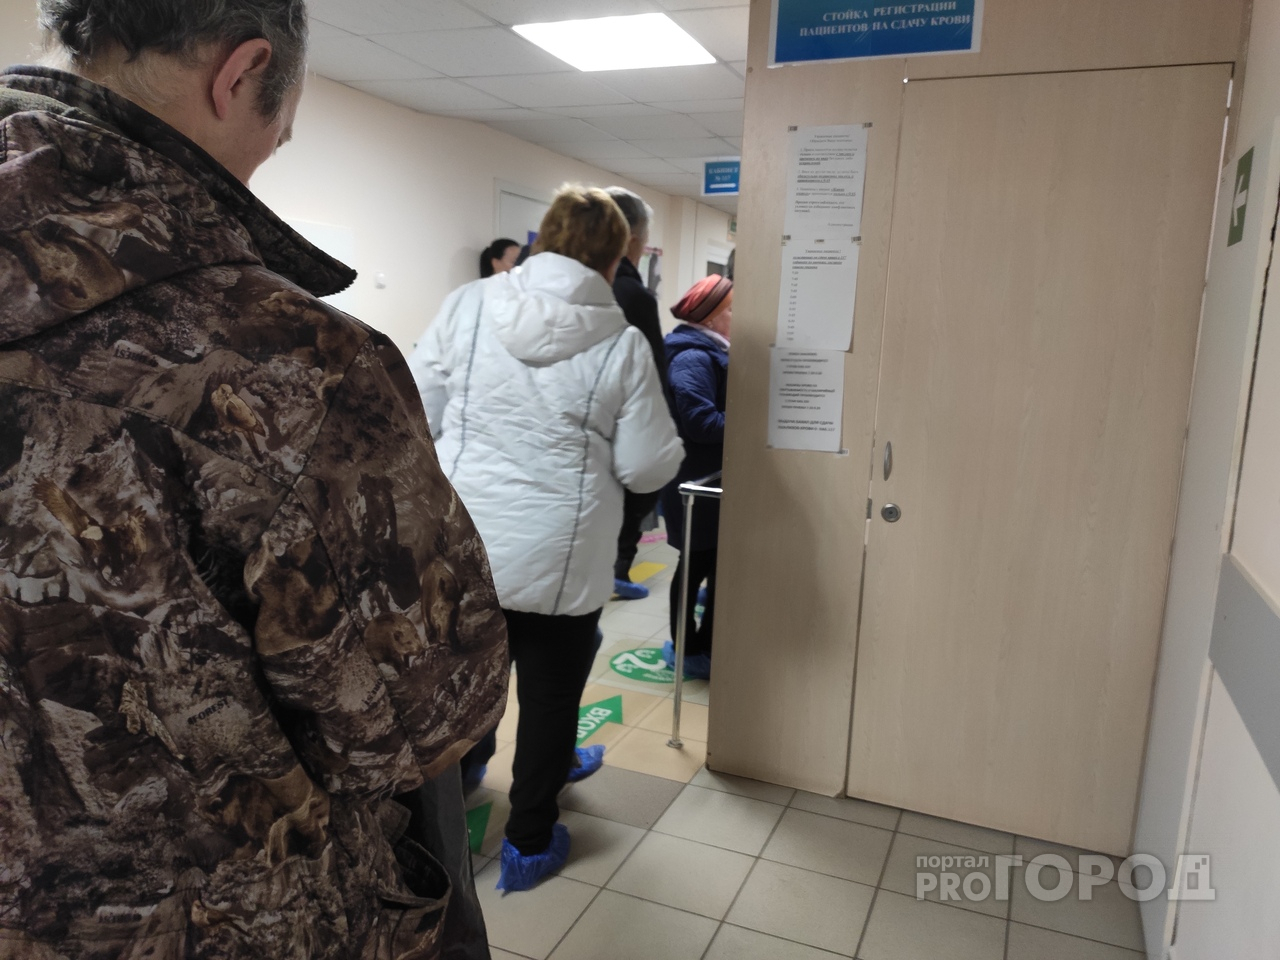 У онкобольного пациента нашли коронавирус: остановлен прием  в отделении больницы Рыбинска